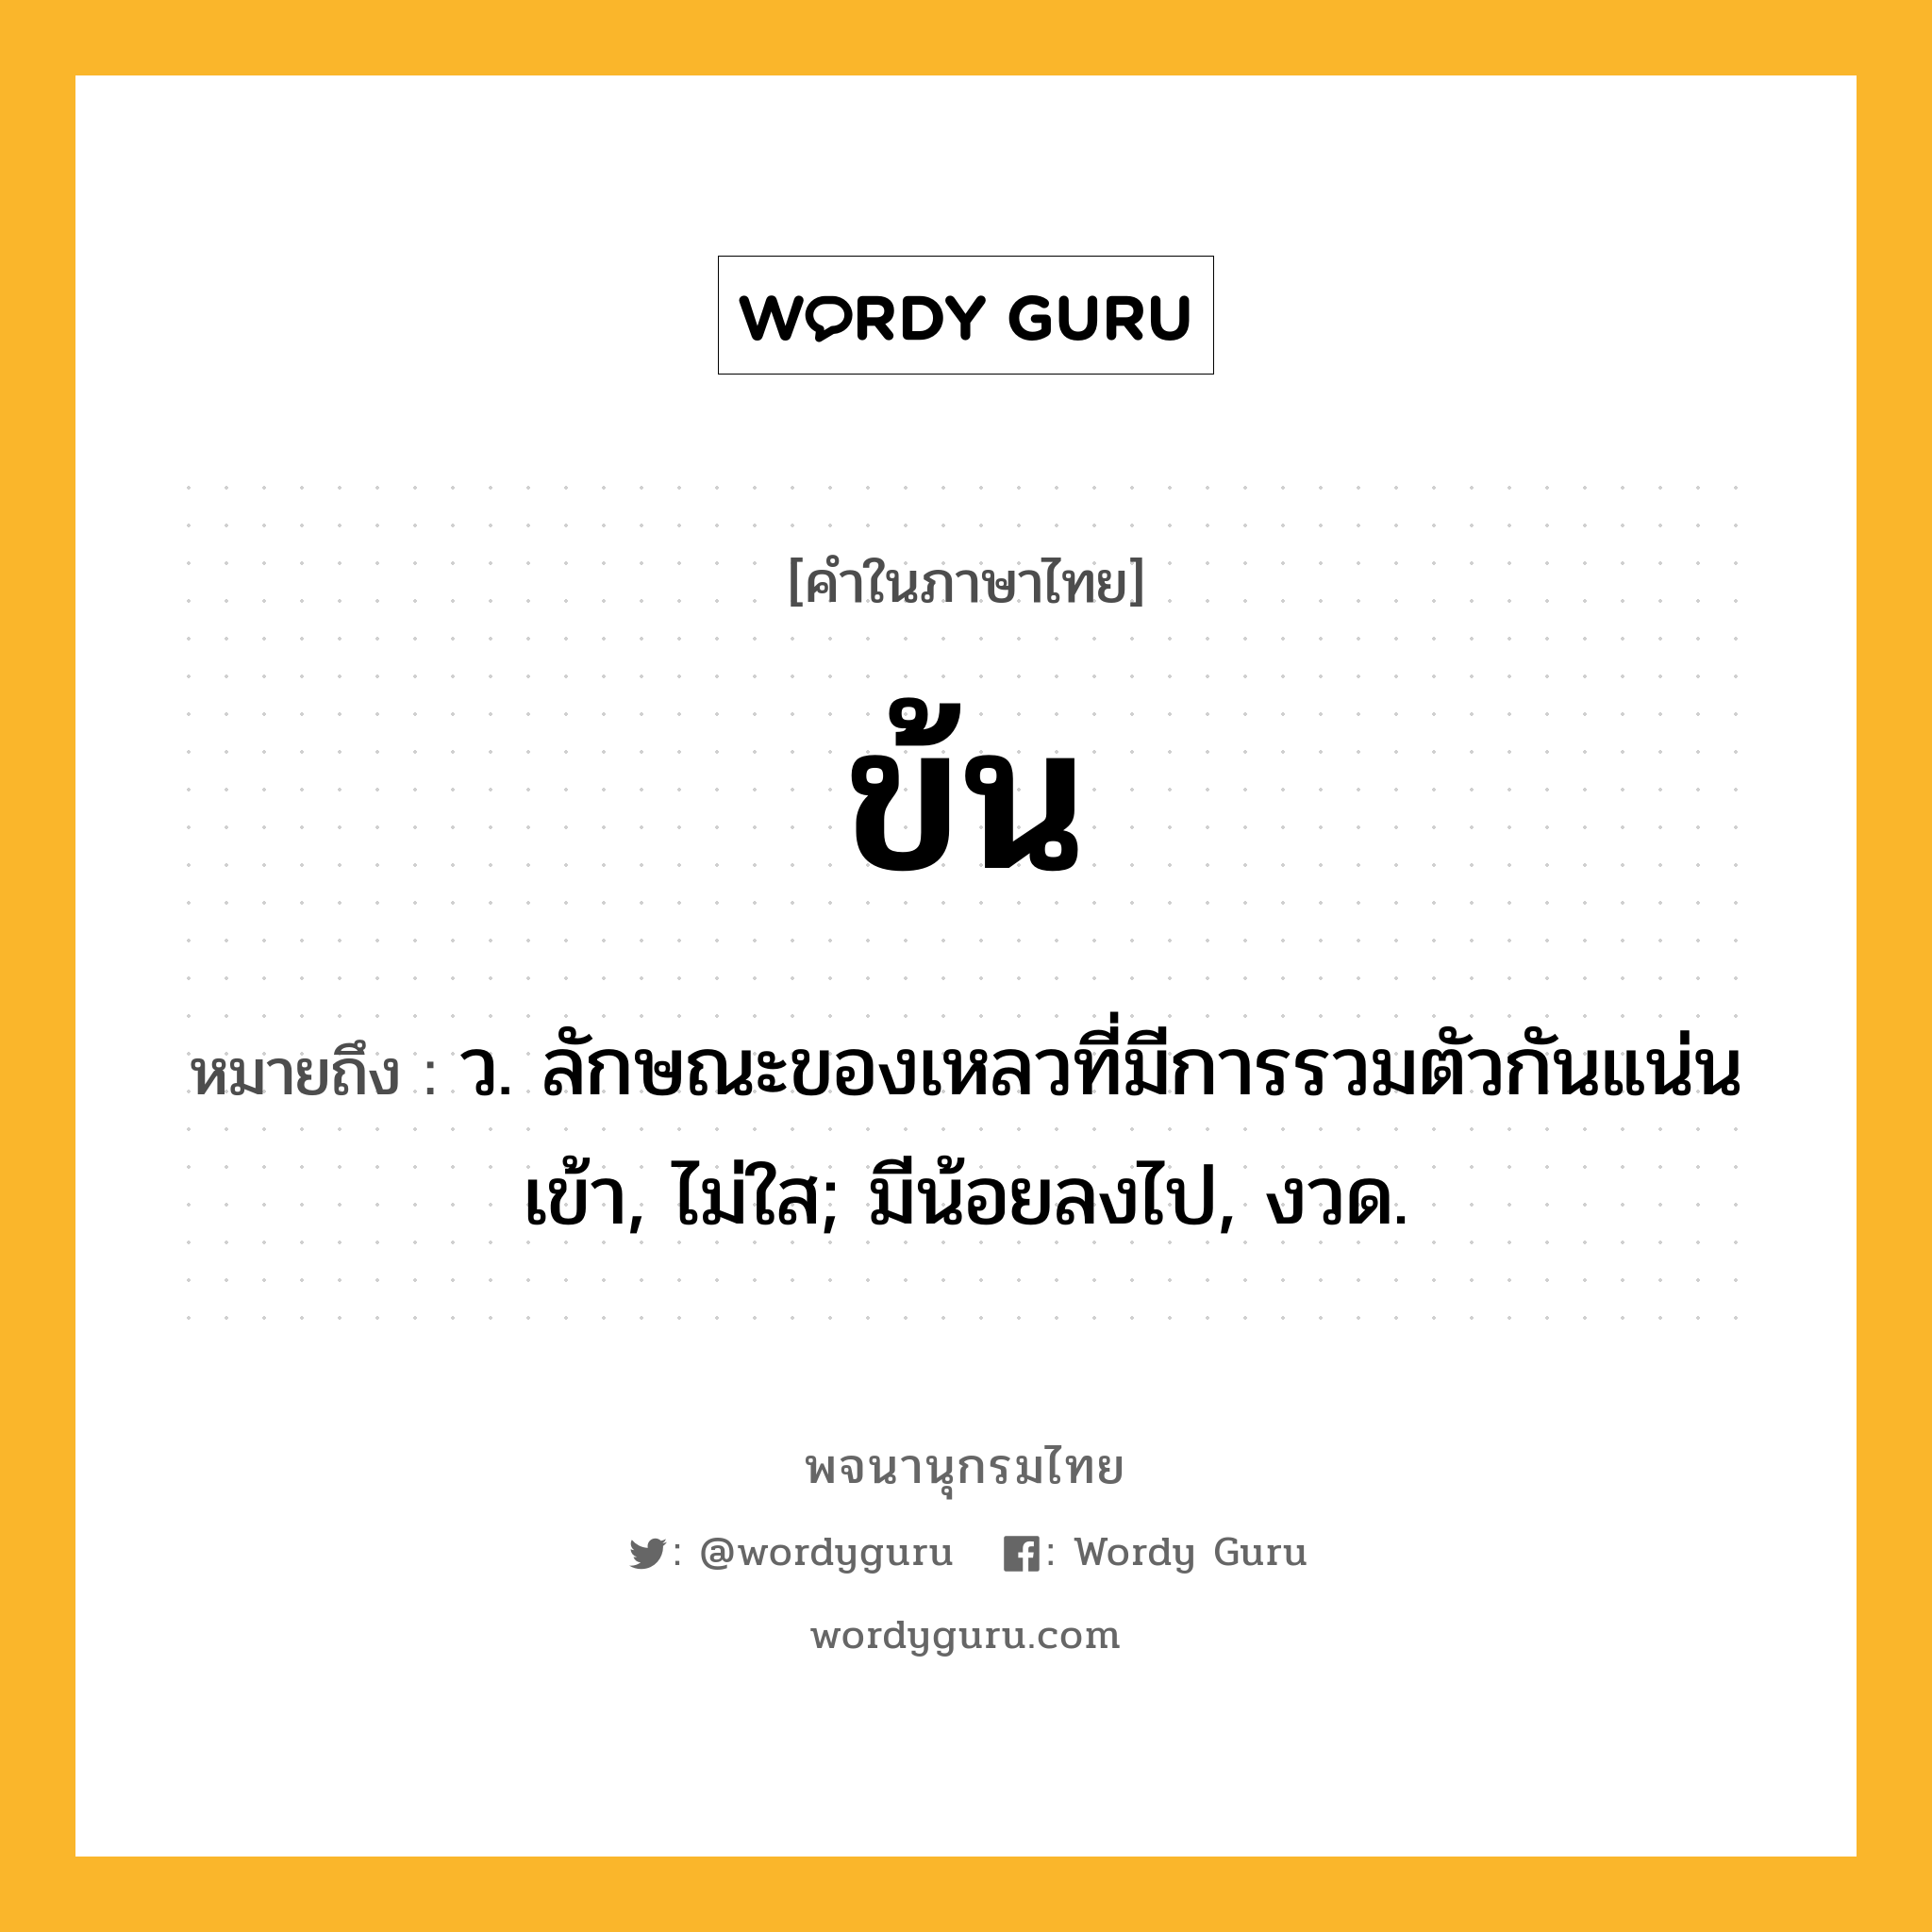 ข้น หมายถึงอะไร?, คำในภาษาไทย ข้น หมายถึง ว. ลักษณะของเหลวที่มีการรวมตัวกันแน่นเข้า, ไม่ใส; มีน้อยลงไป, งวด.